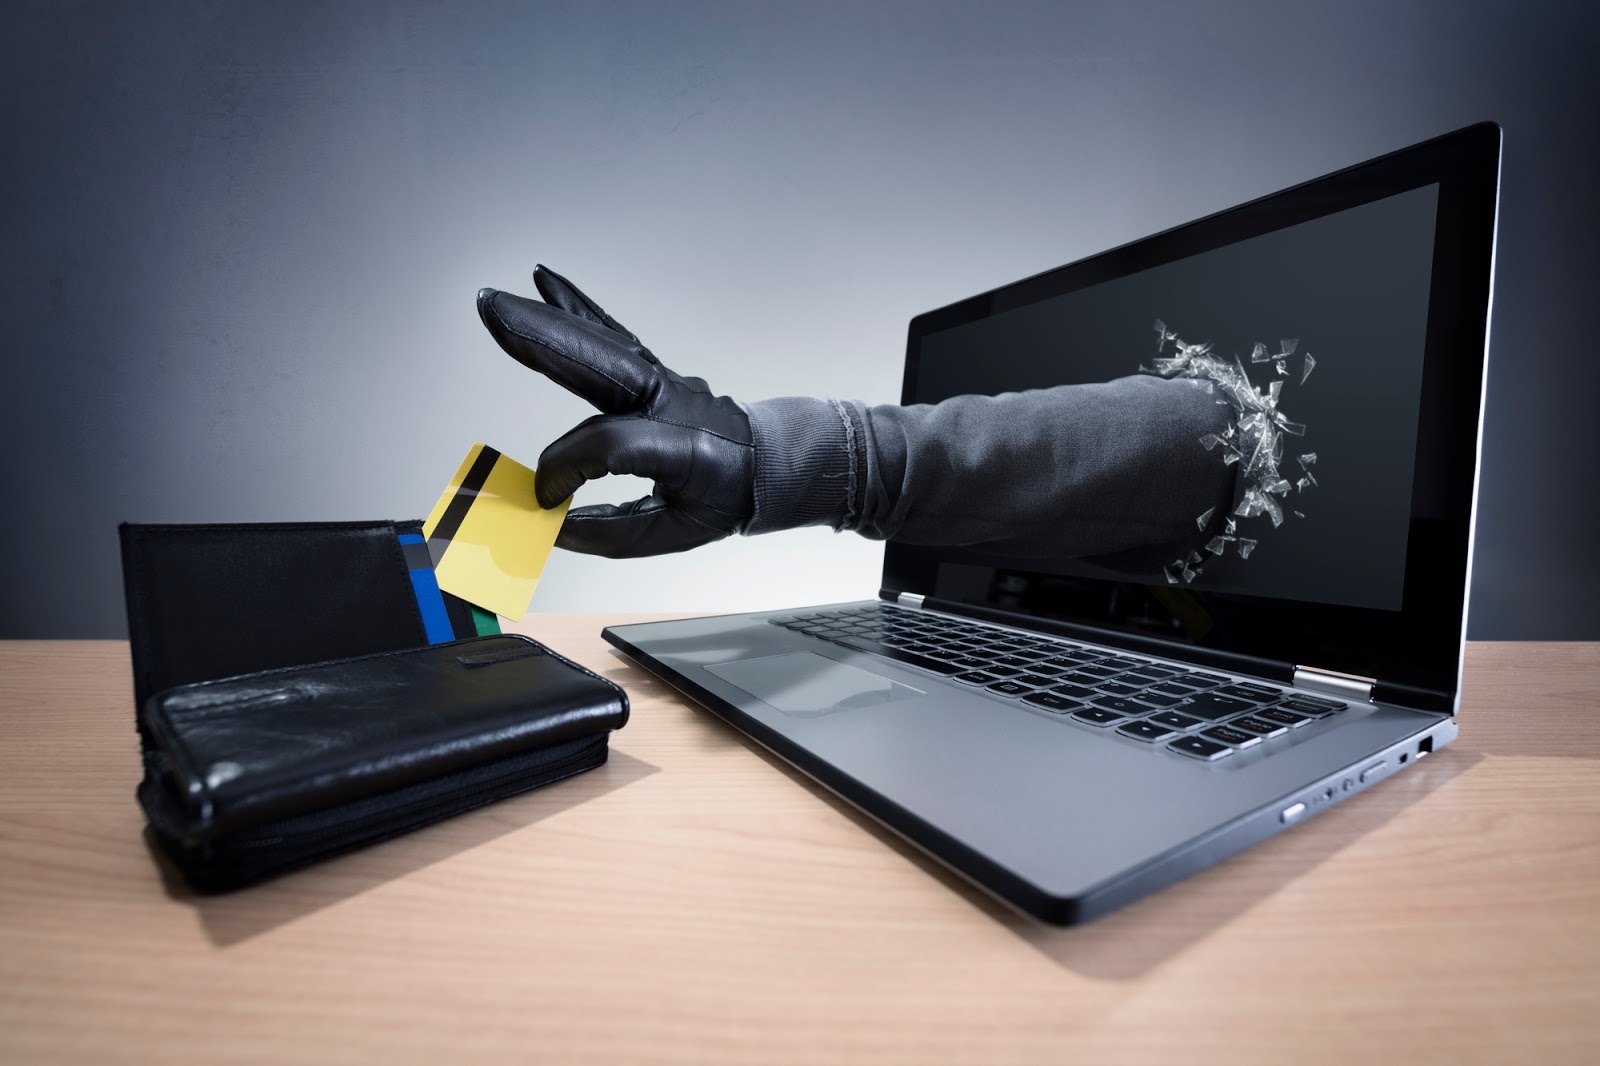 Ποια είναι η μεγαλύτερη απειλή στην ψηφιακή ασφάλεια; - Φωτογραφία 1